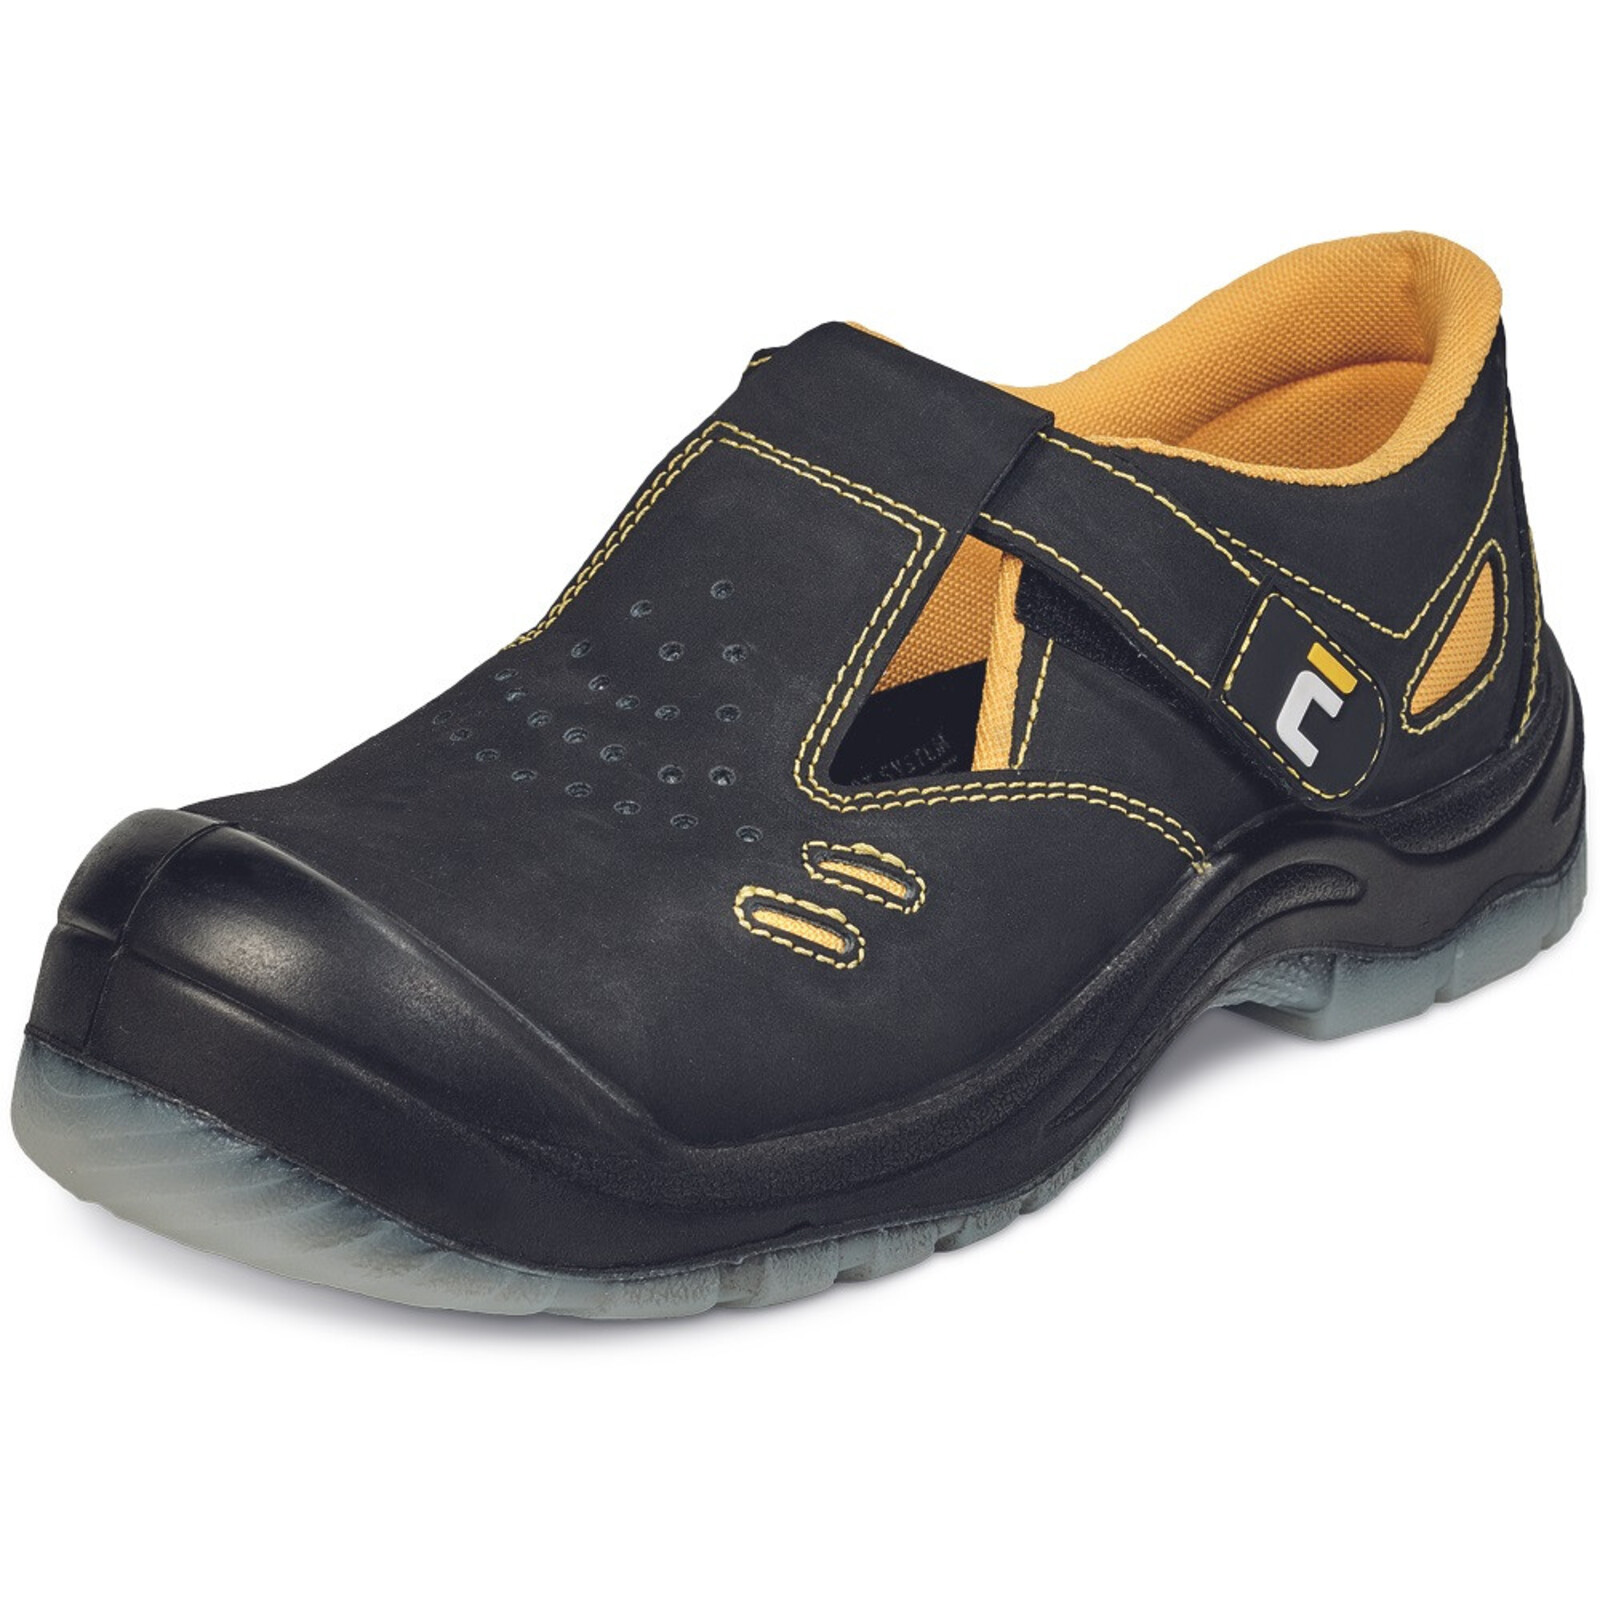 Bezpečnostné sandále Cerva BK TPU MF S1P SRC - veľkosť: 48, farba: čierna/žltá